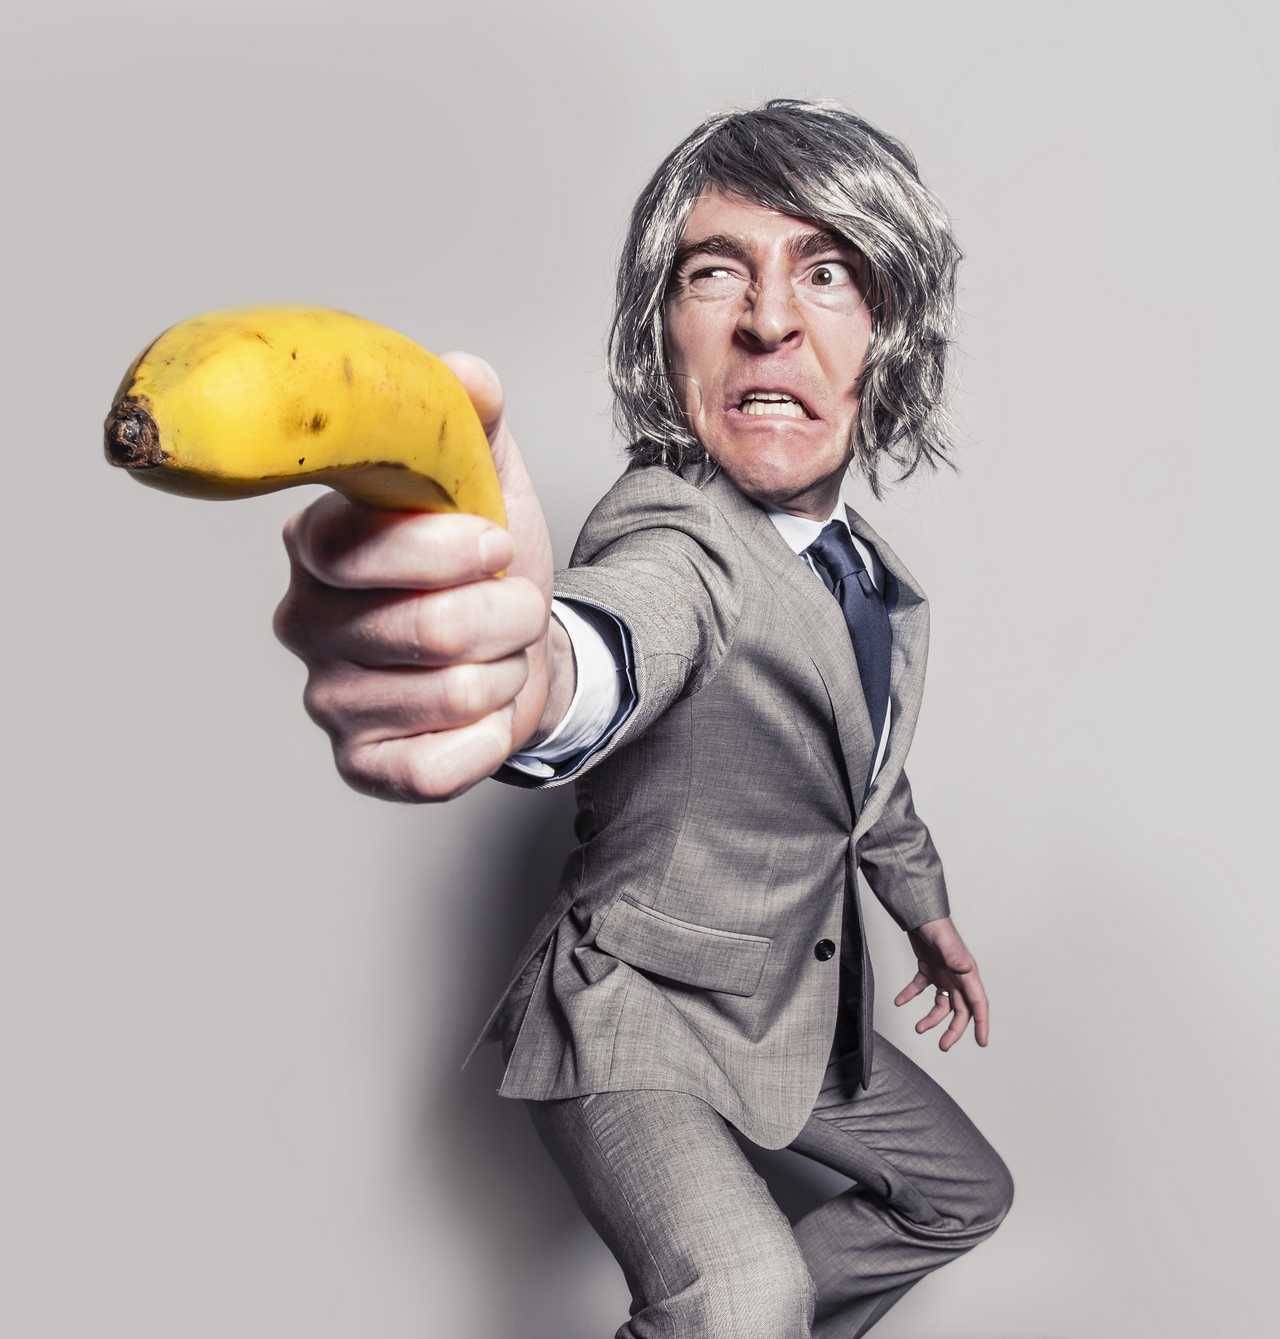 angry adult with banana